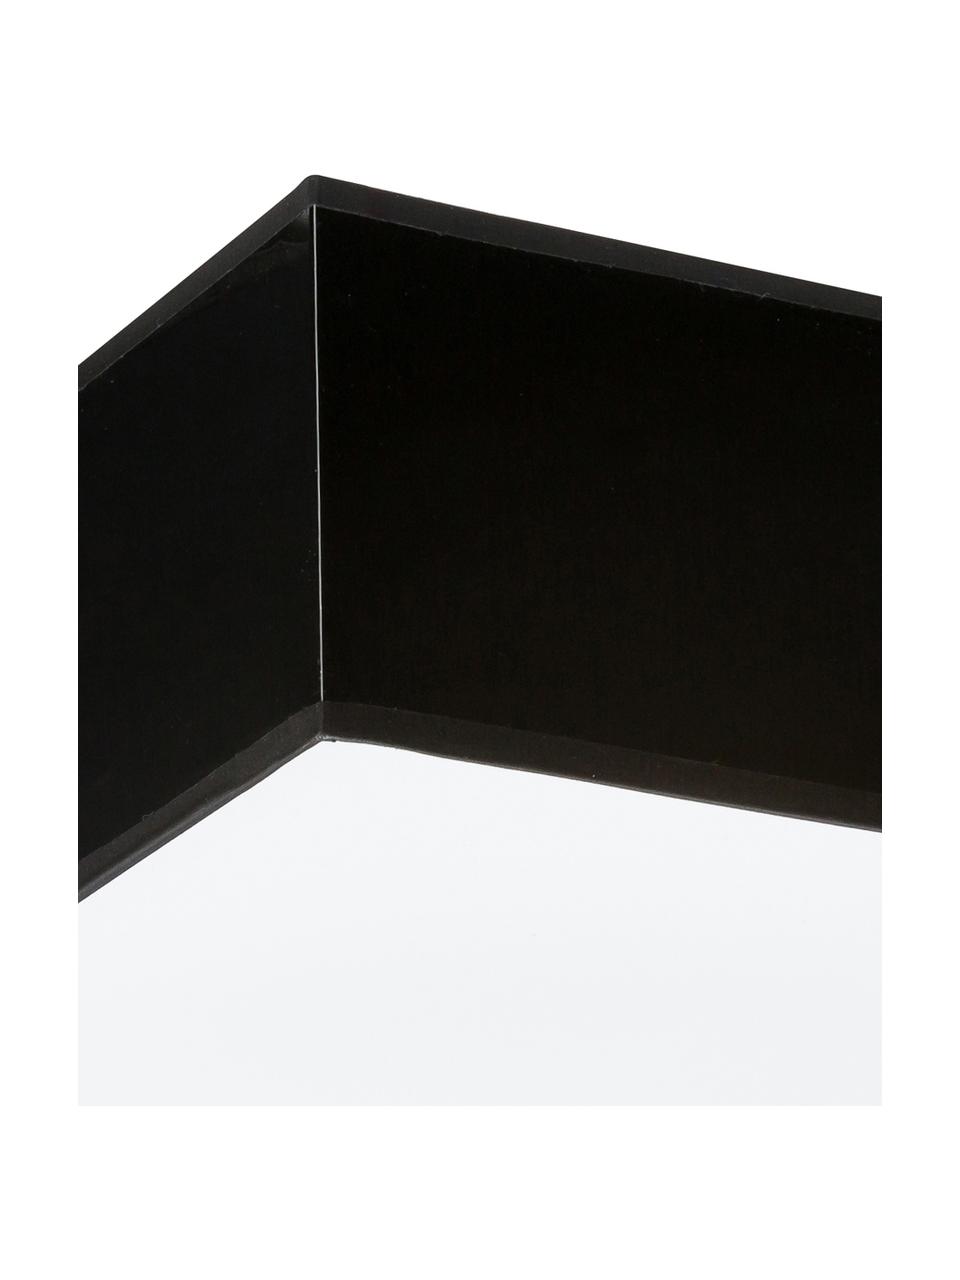 Moderne plafondlamp Mitra, Lampenkap: kunststof, Diffuser: kunststof, Frame: zwart. Diffuser: wit, 35 x 12 cm